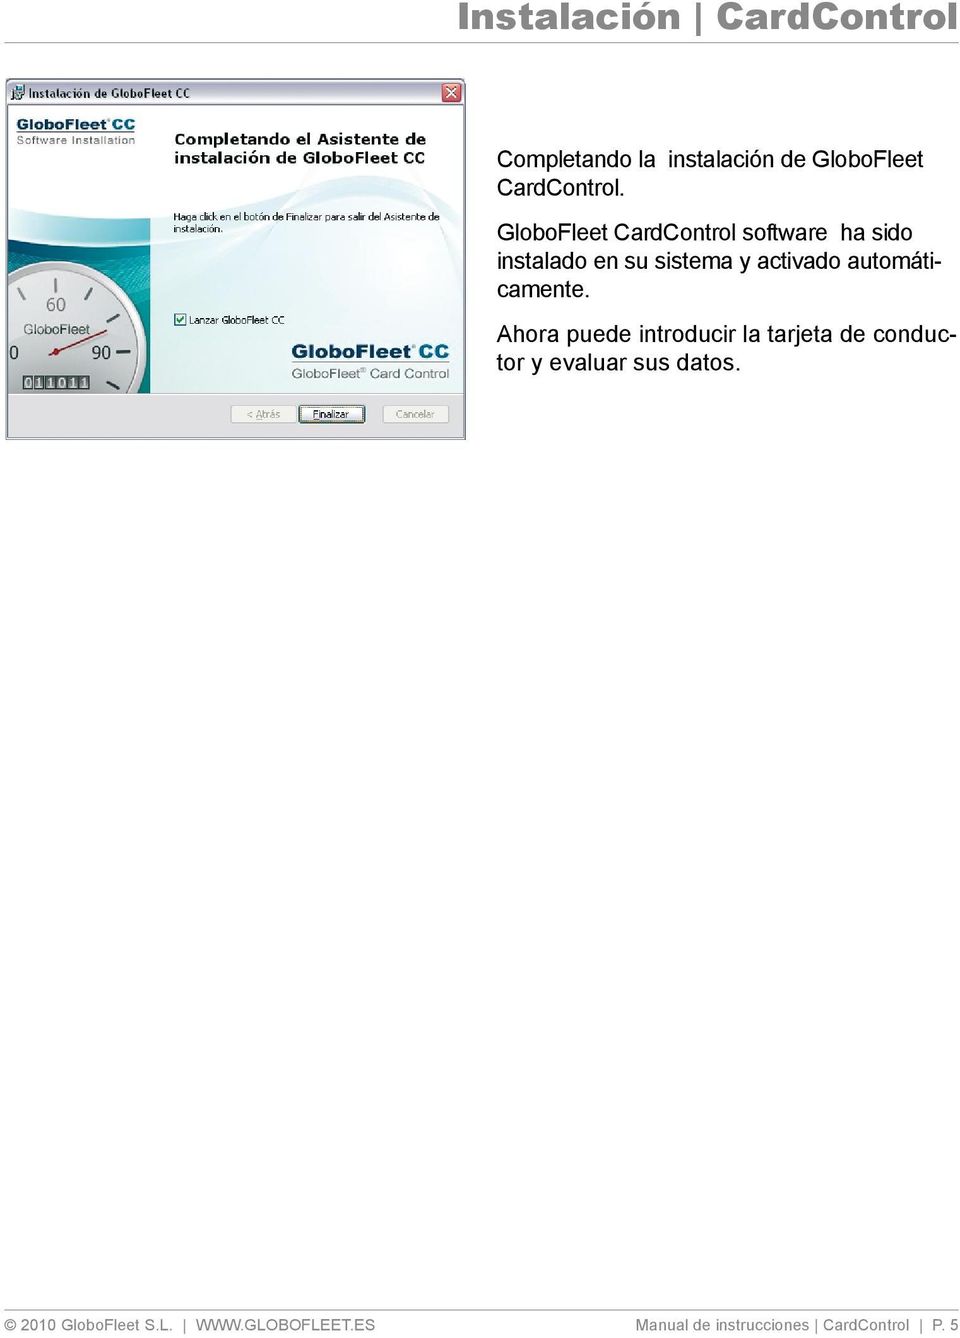 GloboFleet CardControl software ha sido instalado en su sistema y